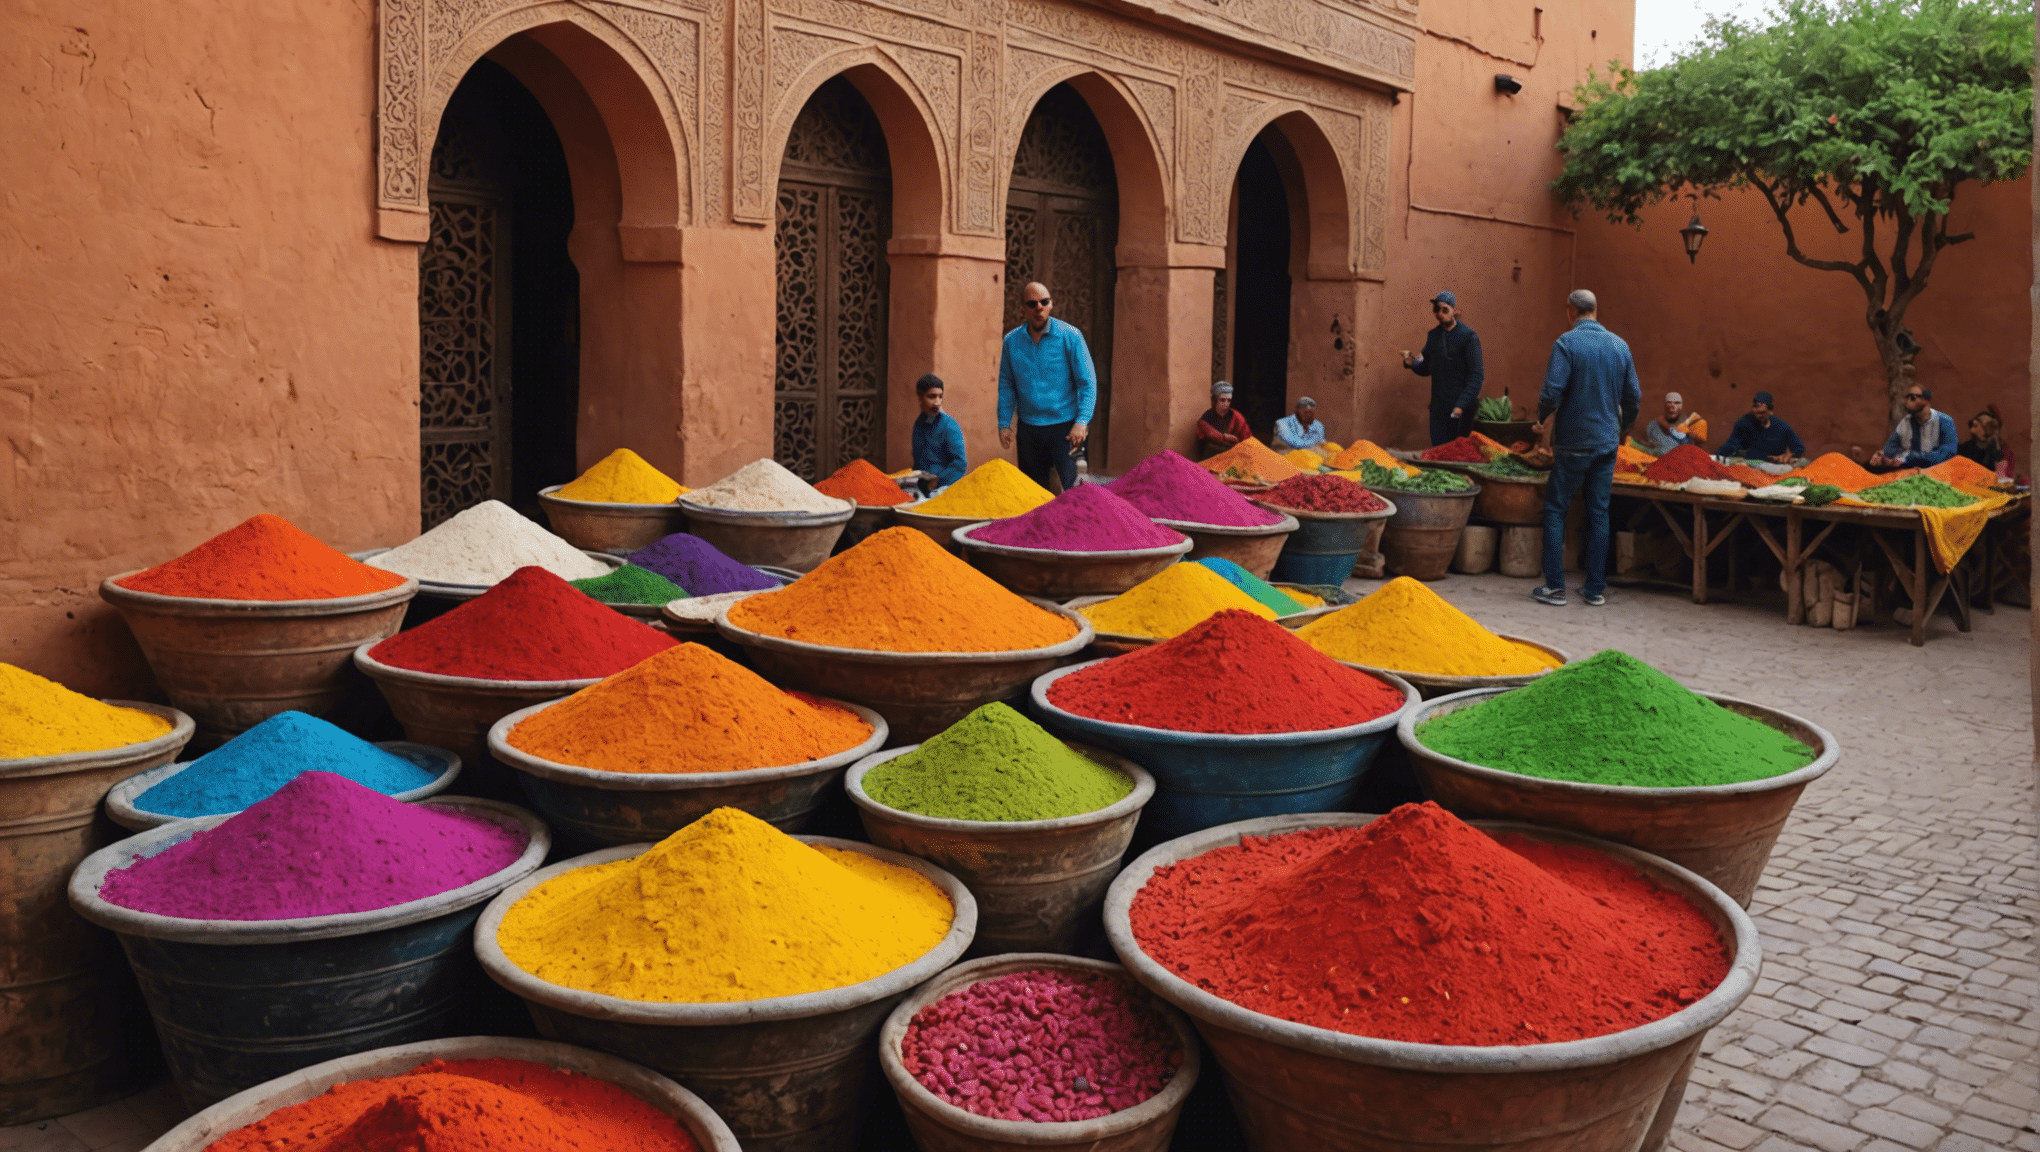 découvrez des activités amusantes et familiales à Marrakech avec ces superbes options !